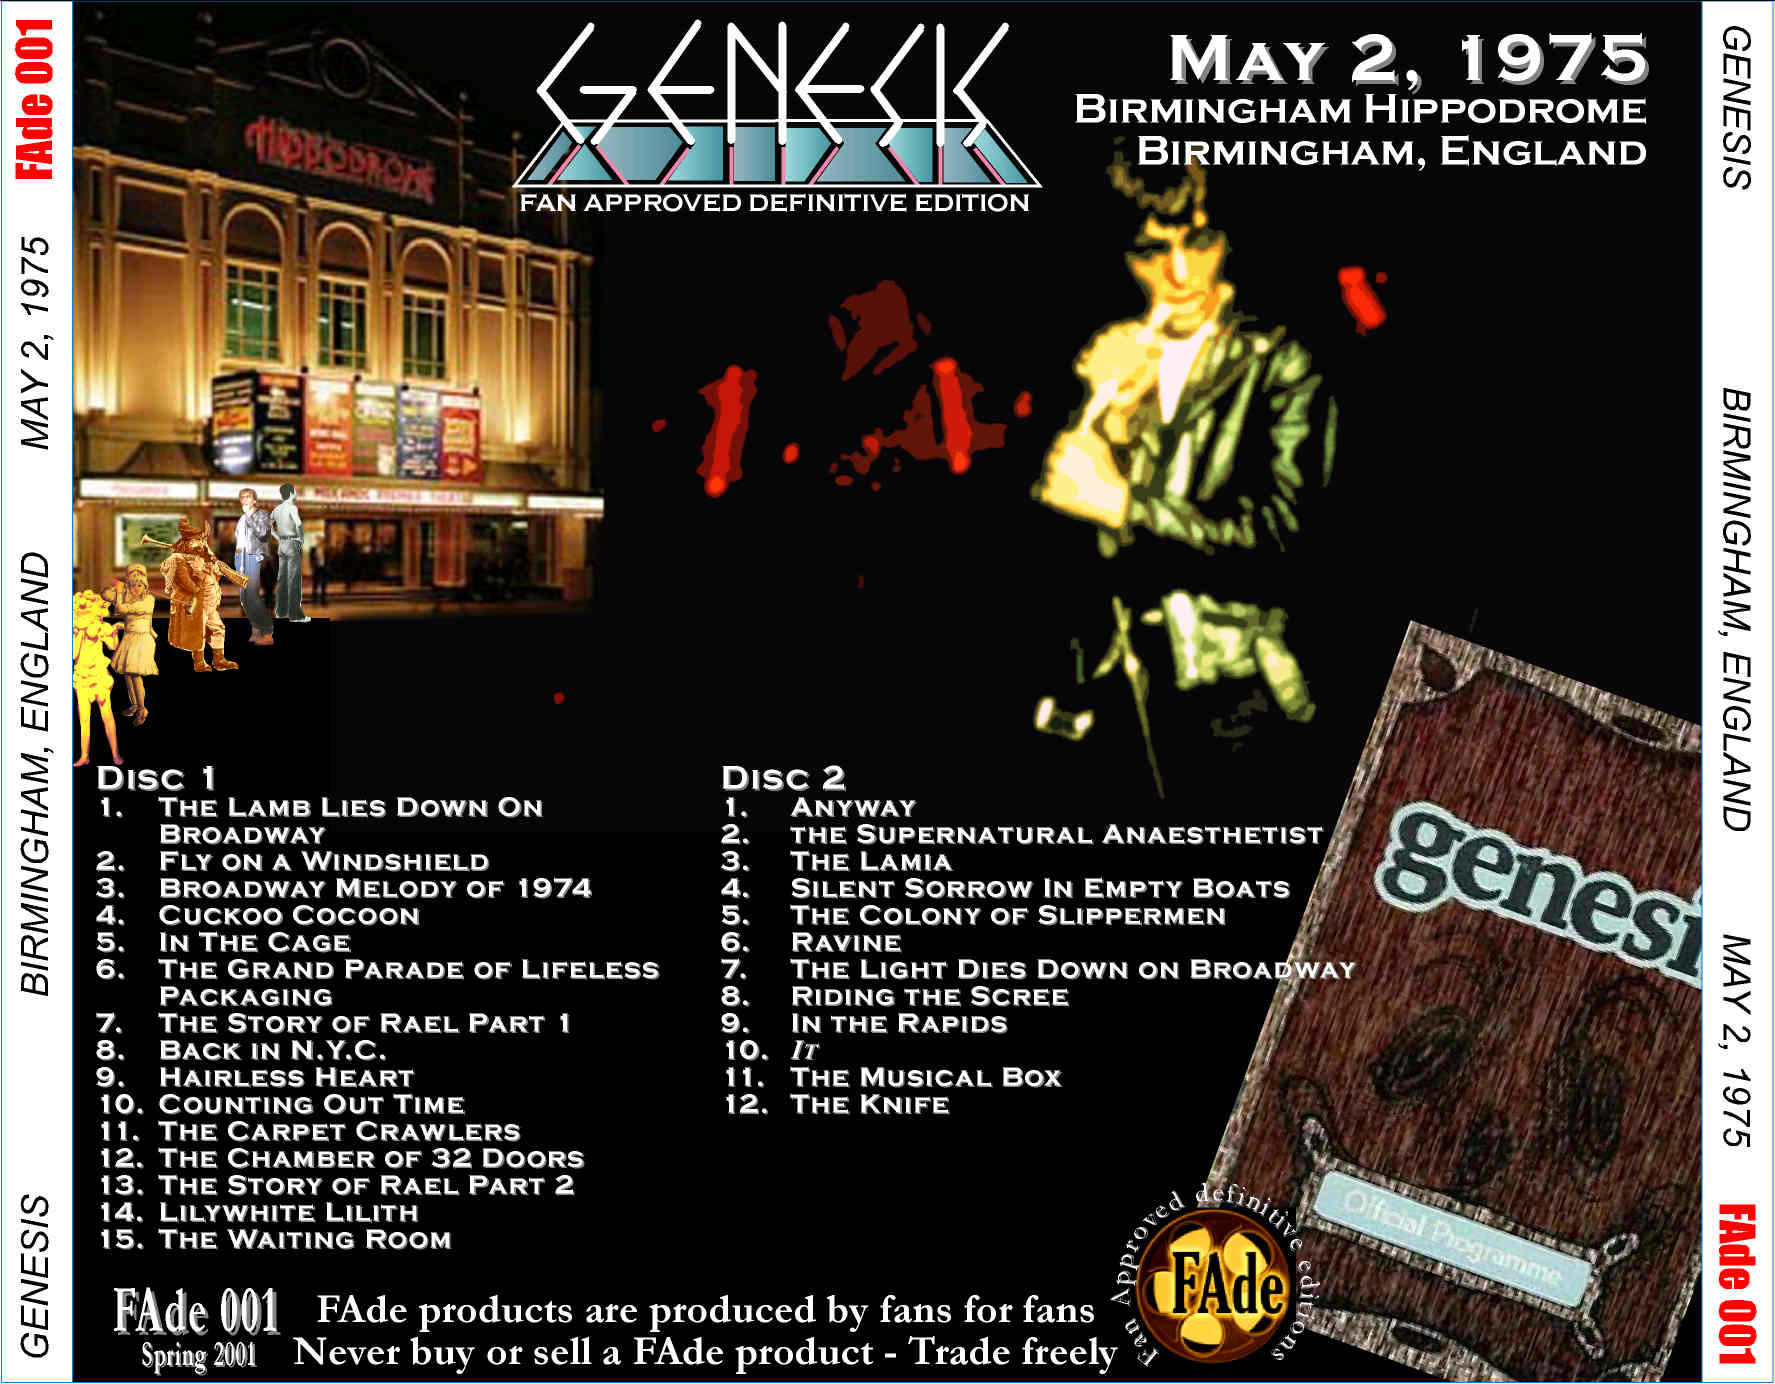 Genesis1975-05-02HippodromeBirminghamEnglandUK (3).jpg